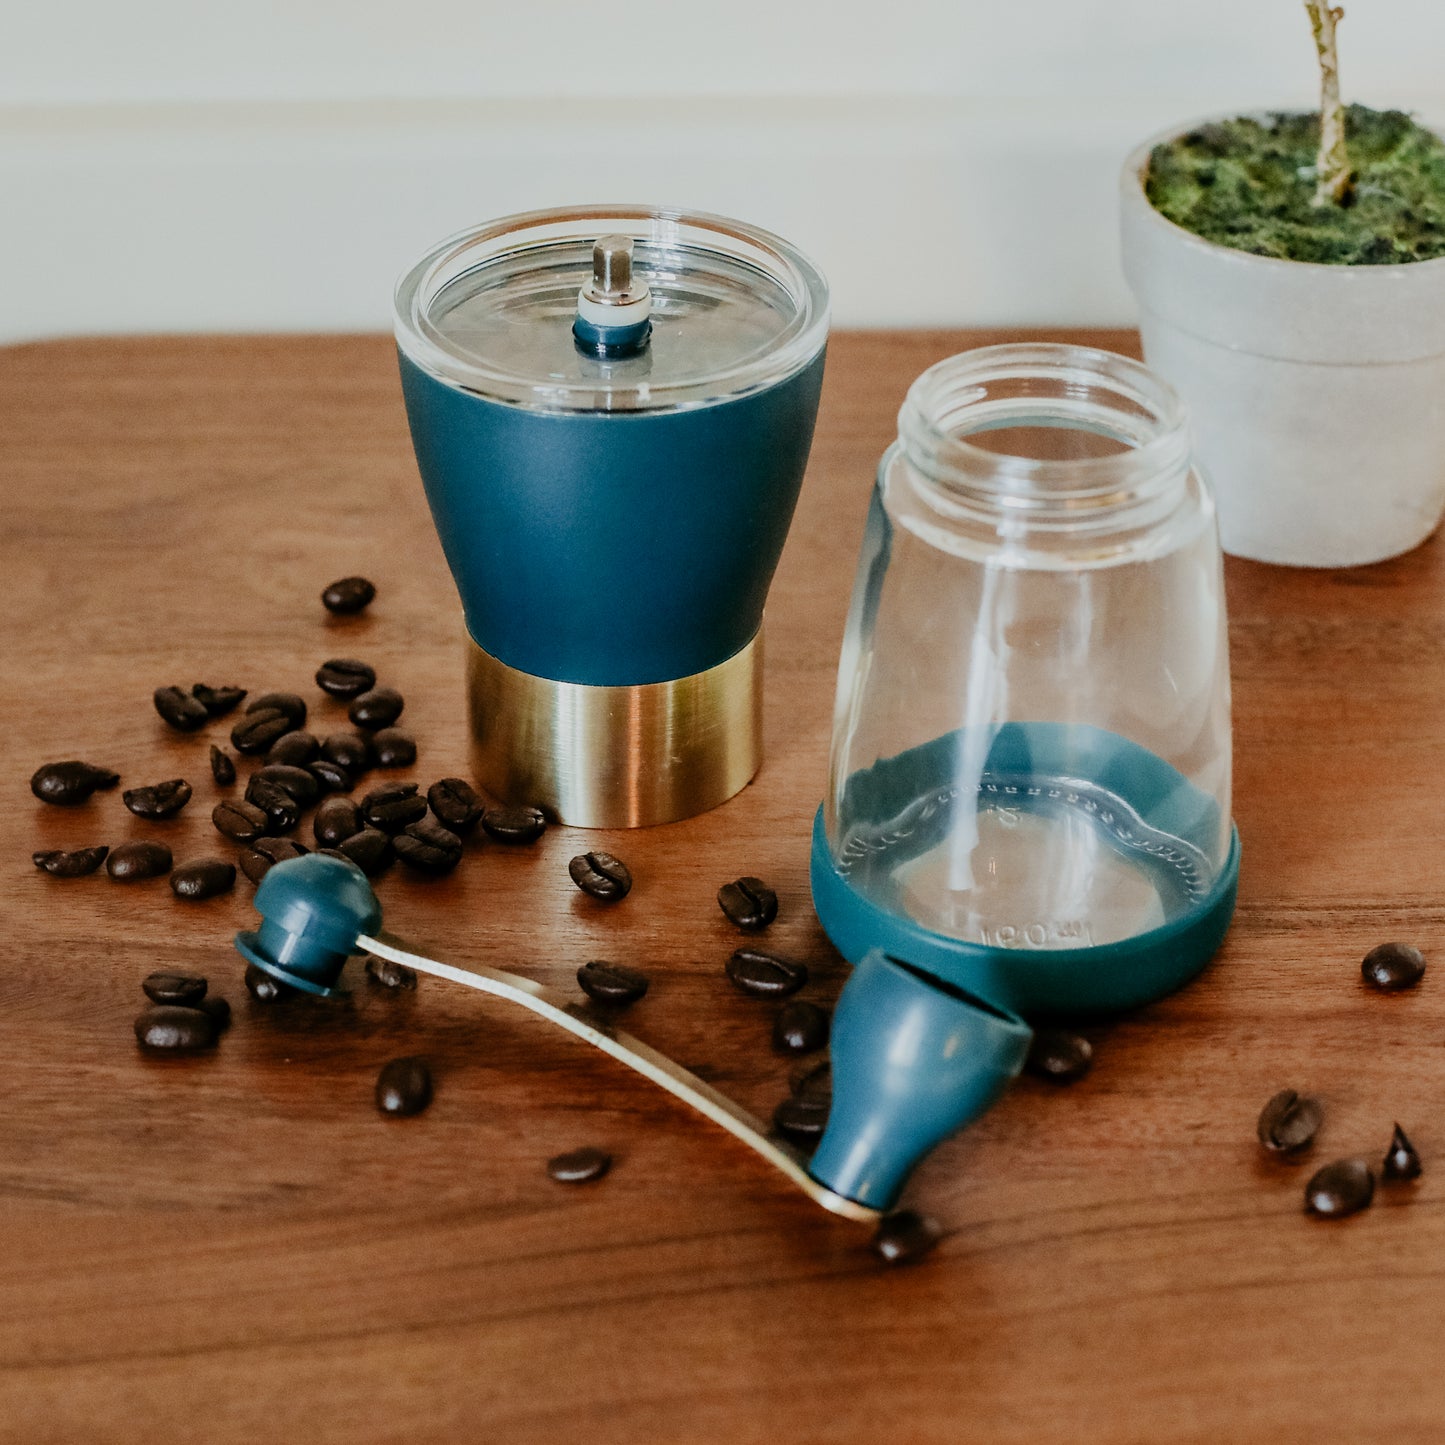 Teal Manual Coffee Grinder